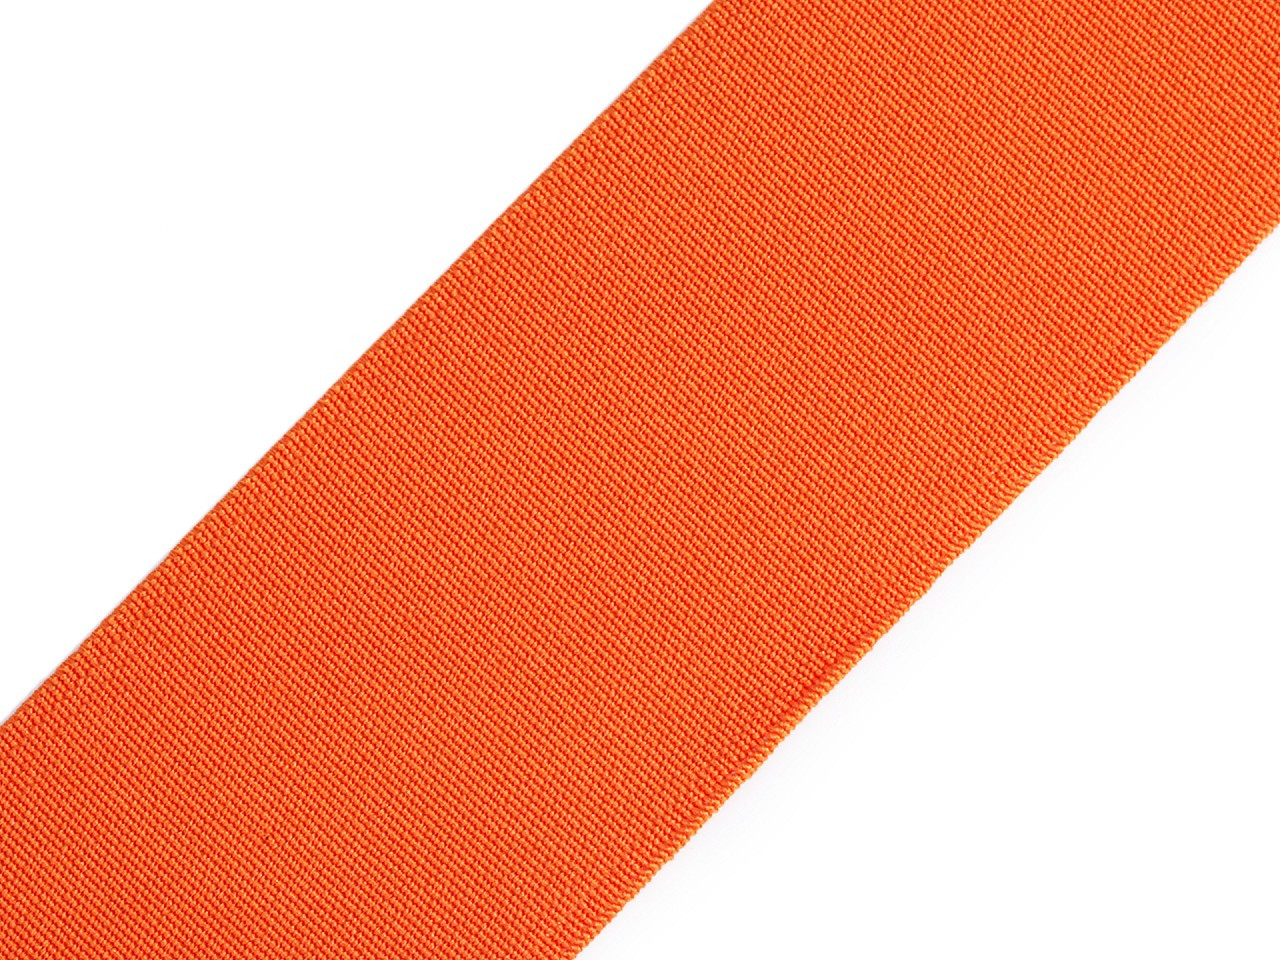 Pruženka hladká šíře 50 mm tkaná barevná, barva 4302 oranžová dýňová